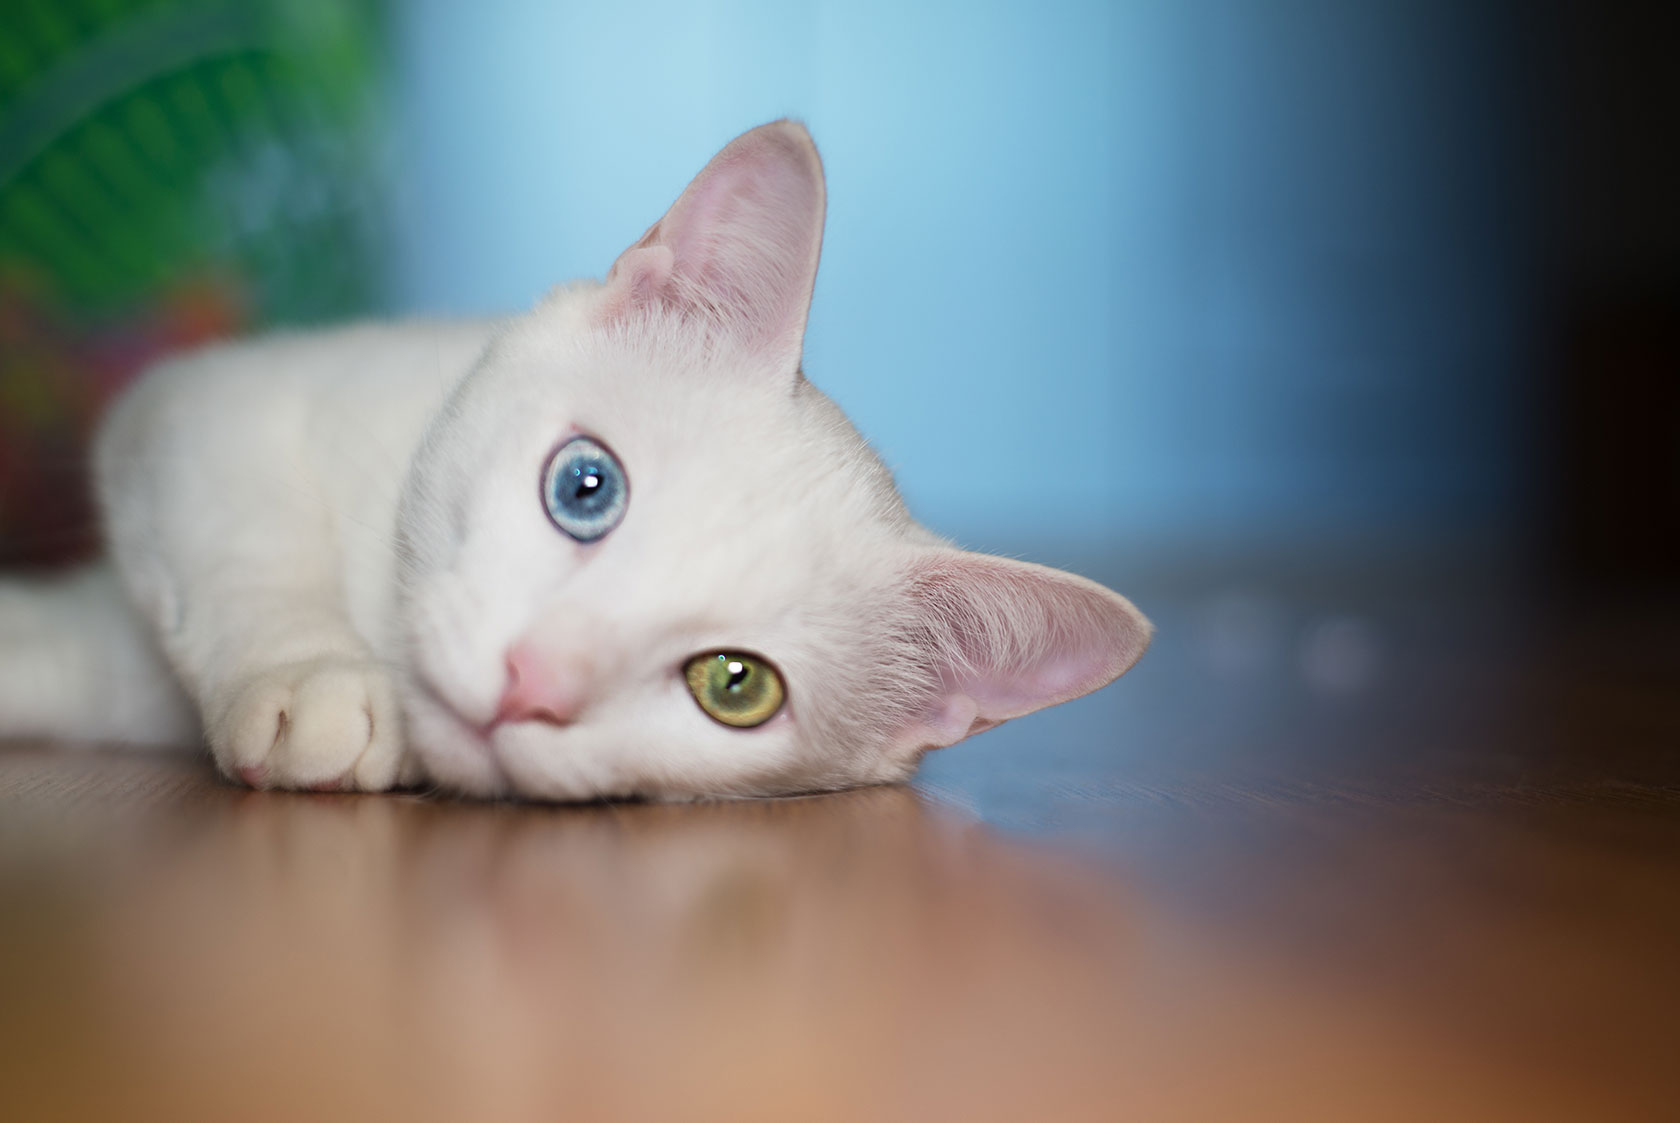 Witte kat met heterochromie